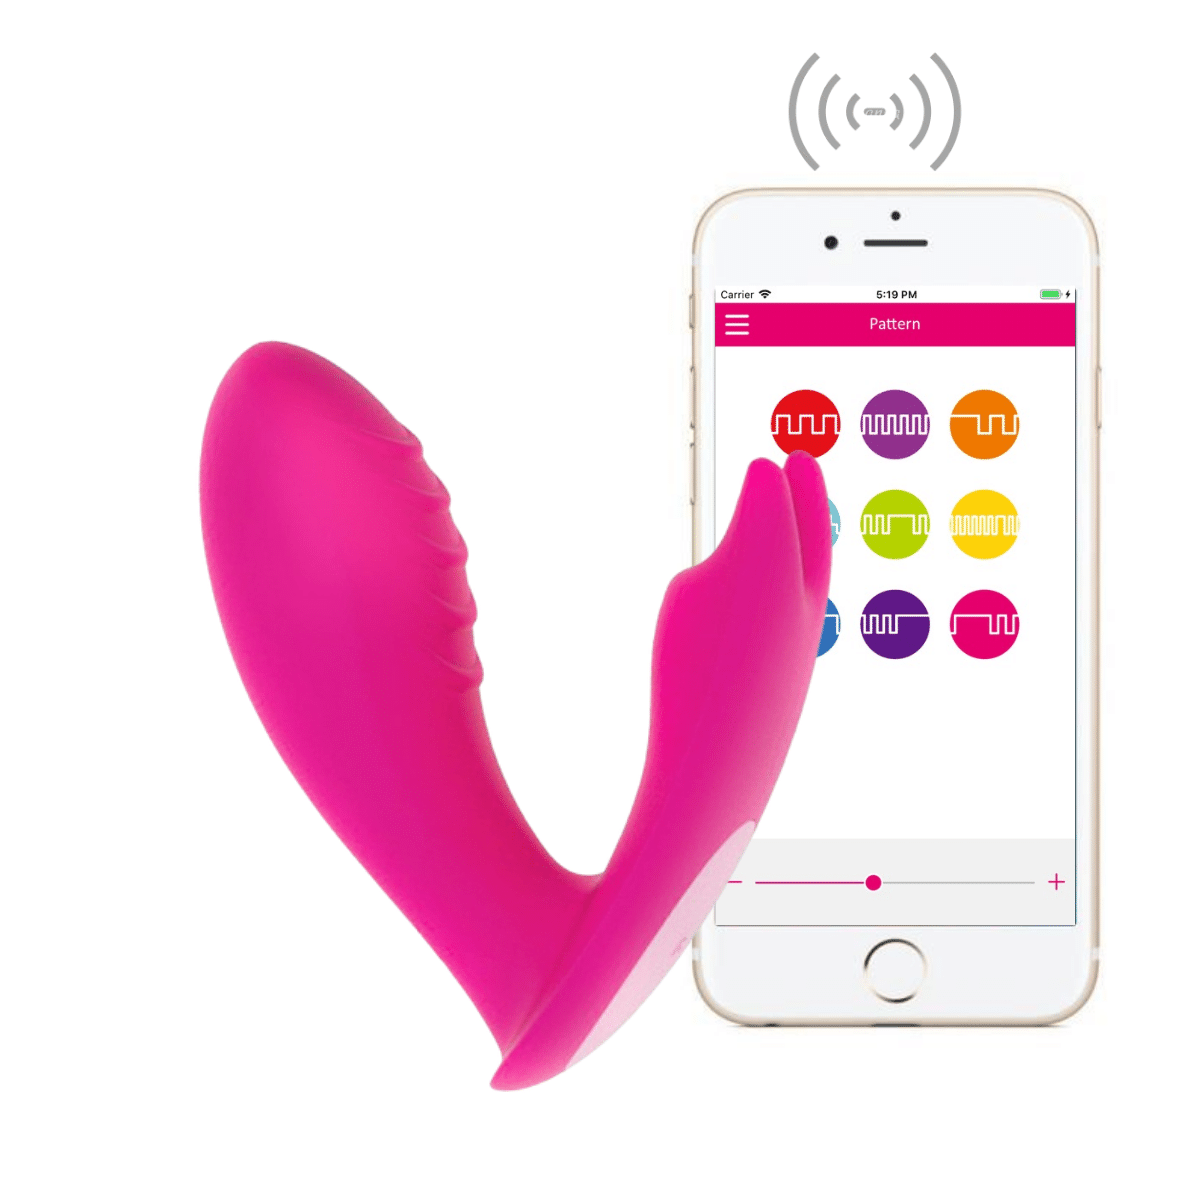 sextoys controlé à distance fantasme insolite discret sextoy couple adulte érotique jouet jeu sexe connecté smartphone IOS android  (3)